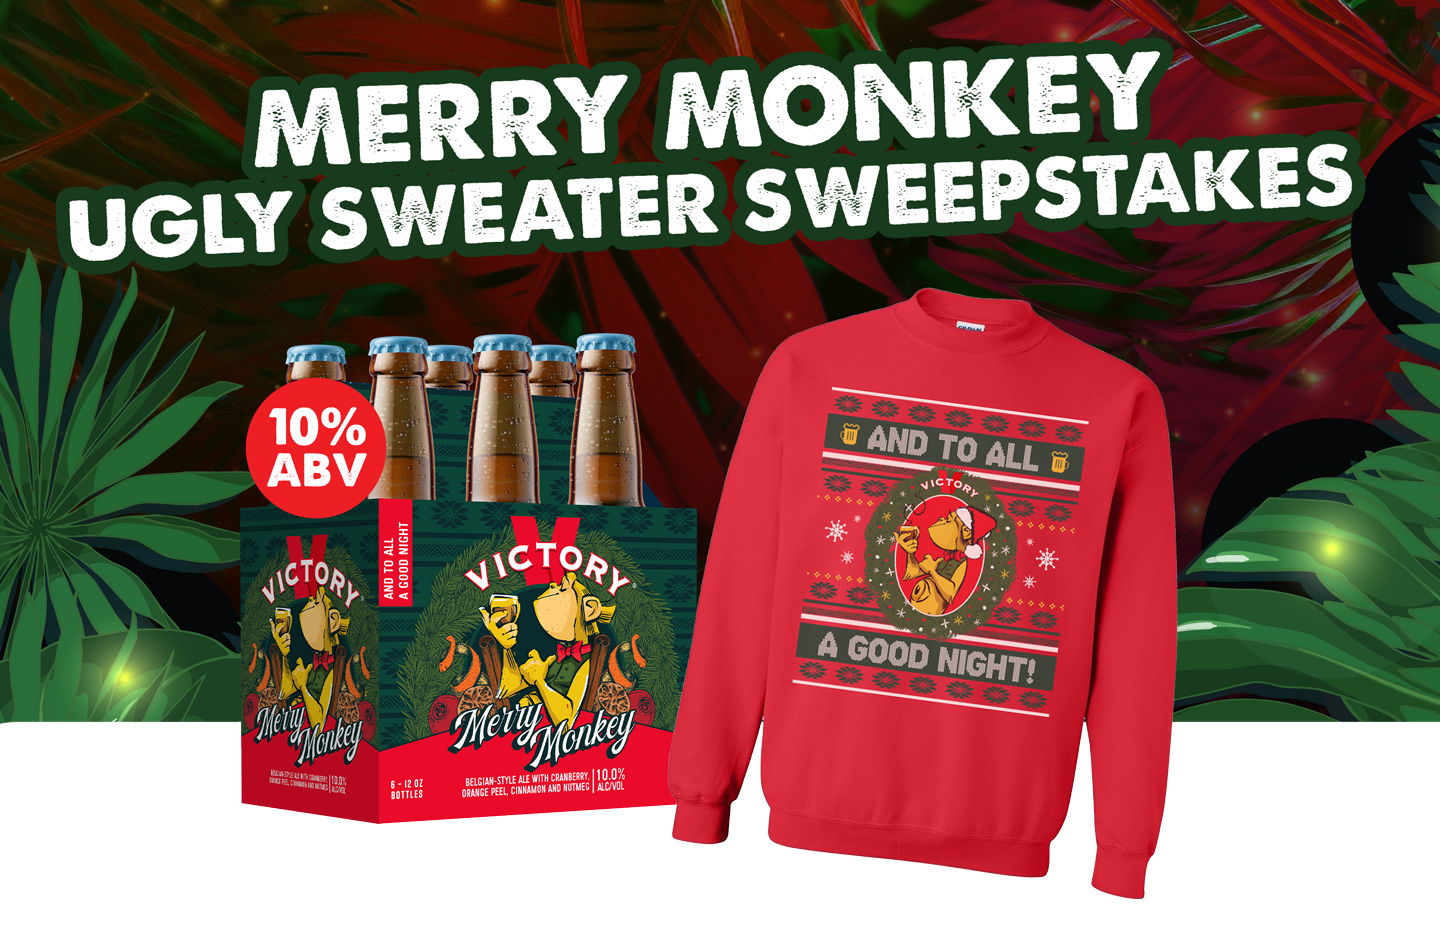 Merry Monkey. Ugly Sweater Sweepstakes